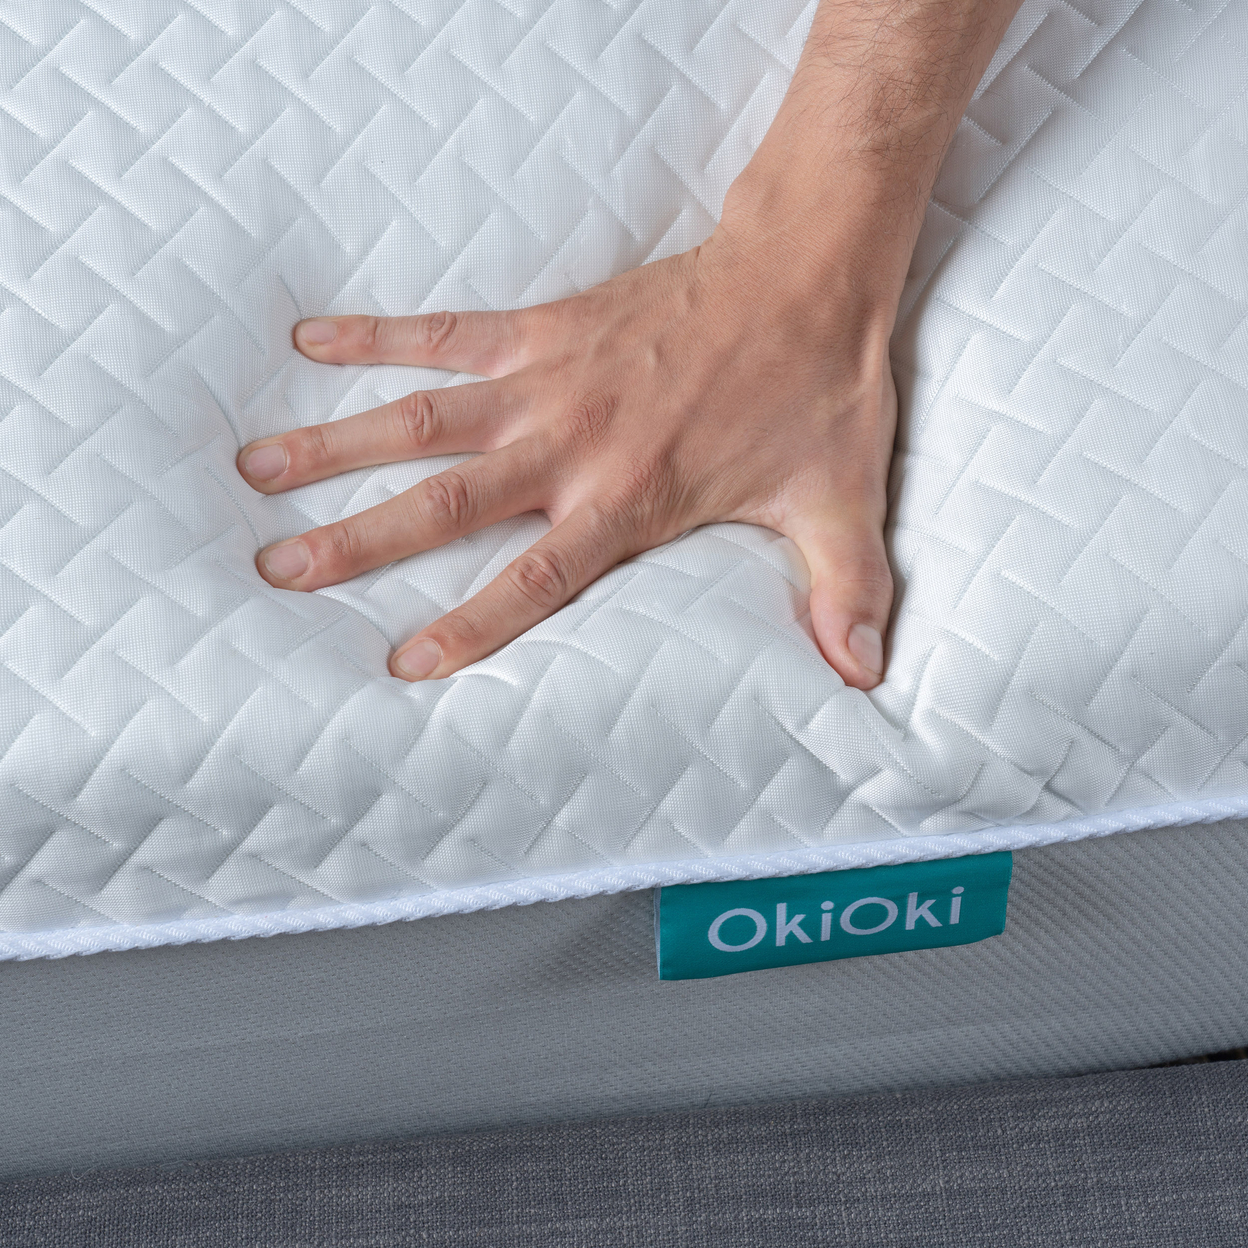 OkiOki 11 Inch OkiEasy Hybrid Pocket-Coil And Foam King Mattress In A Box, Medium Soft